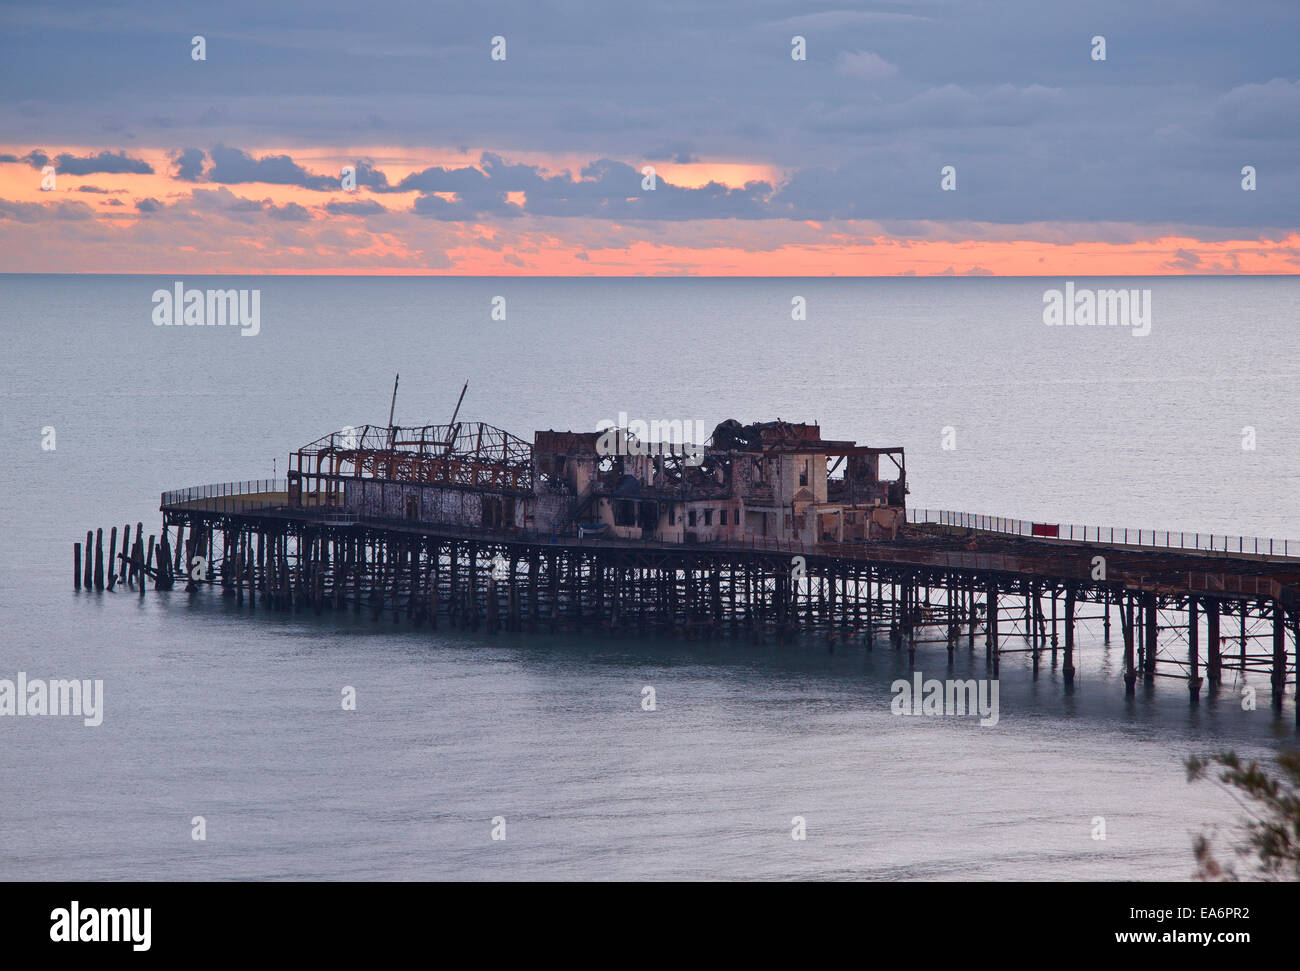 Hastings Pier bei Sonnenuntergang ausgebrannt. Die Pier Ende 2010 Feuer gefangen und brannte. Stockfoto